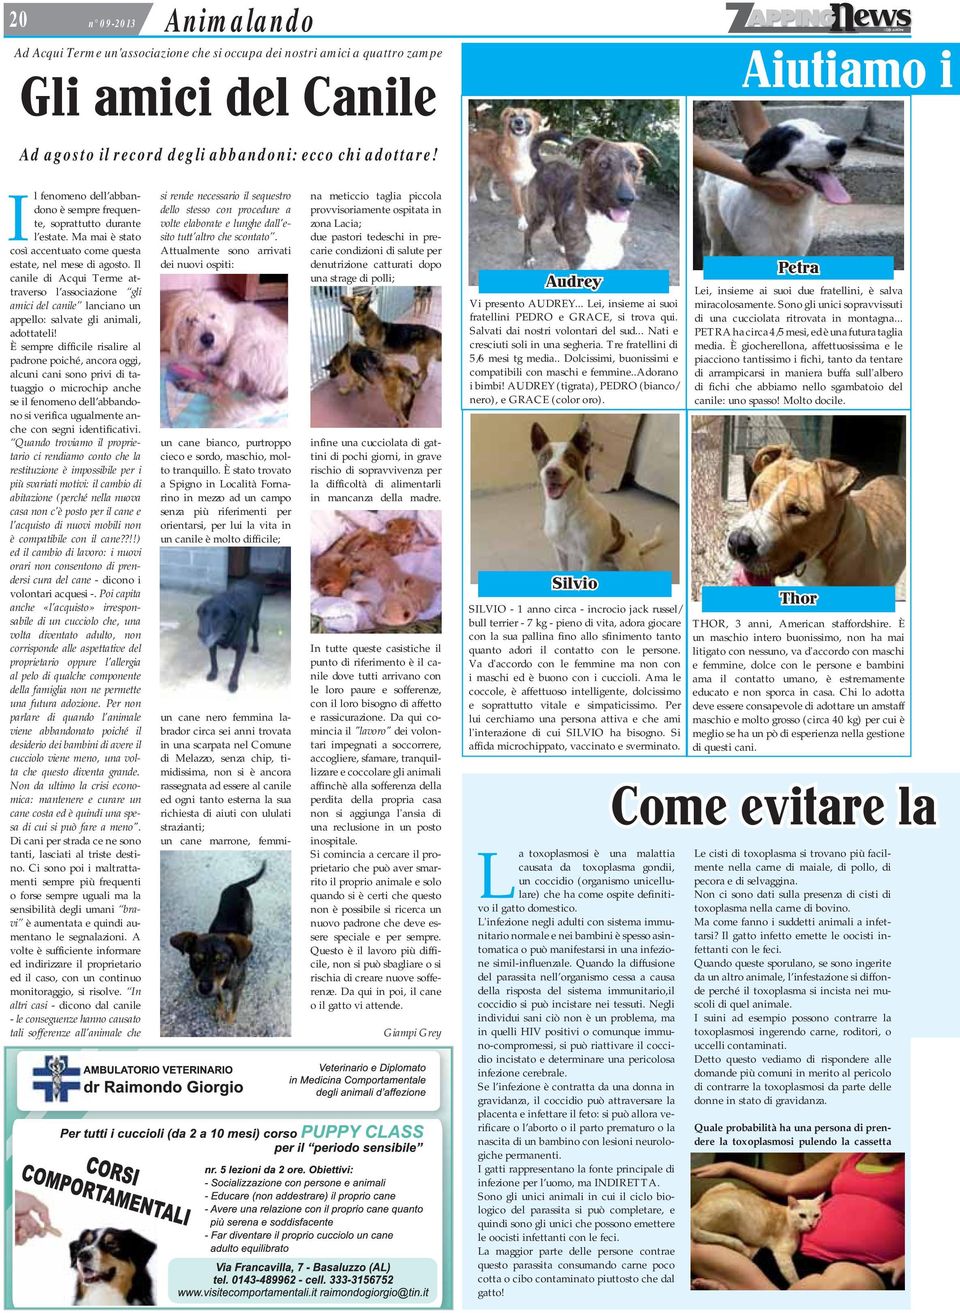 Il canile di Acqui Terme attraverso l associazione gli amici del canile lanciano un appello: salvate gli animali, adottateli!